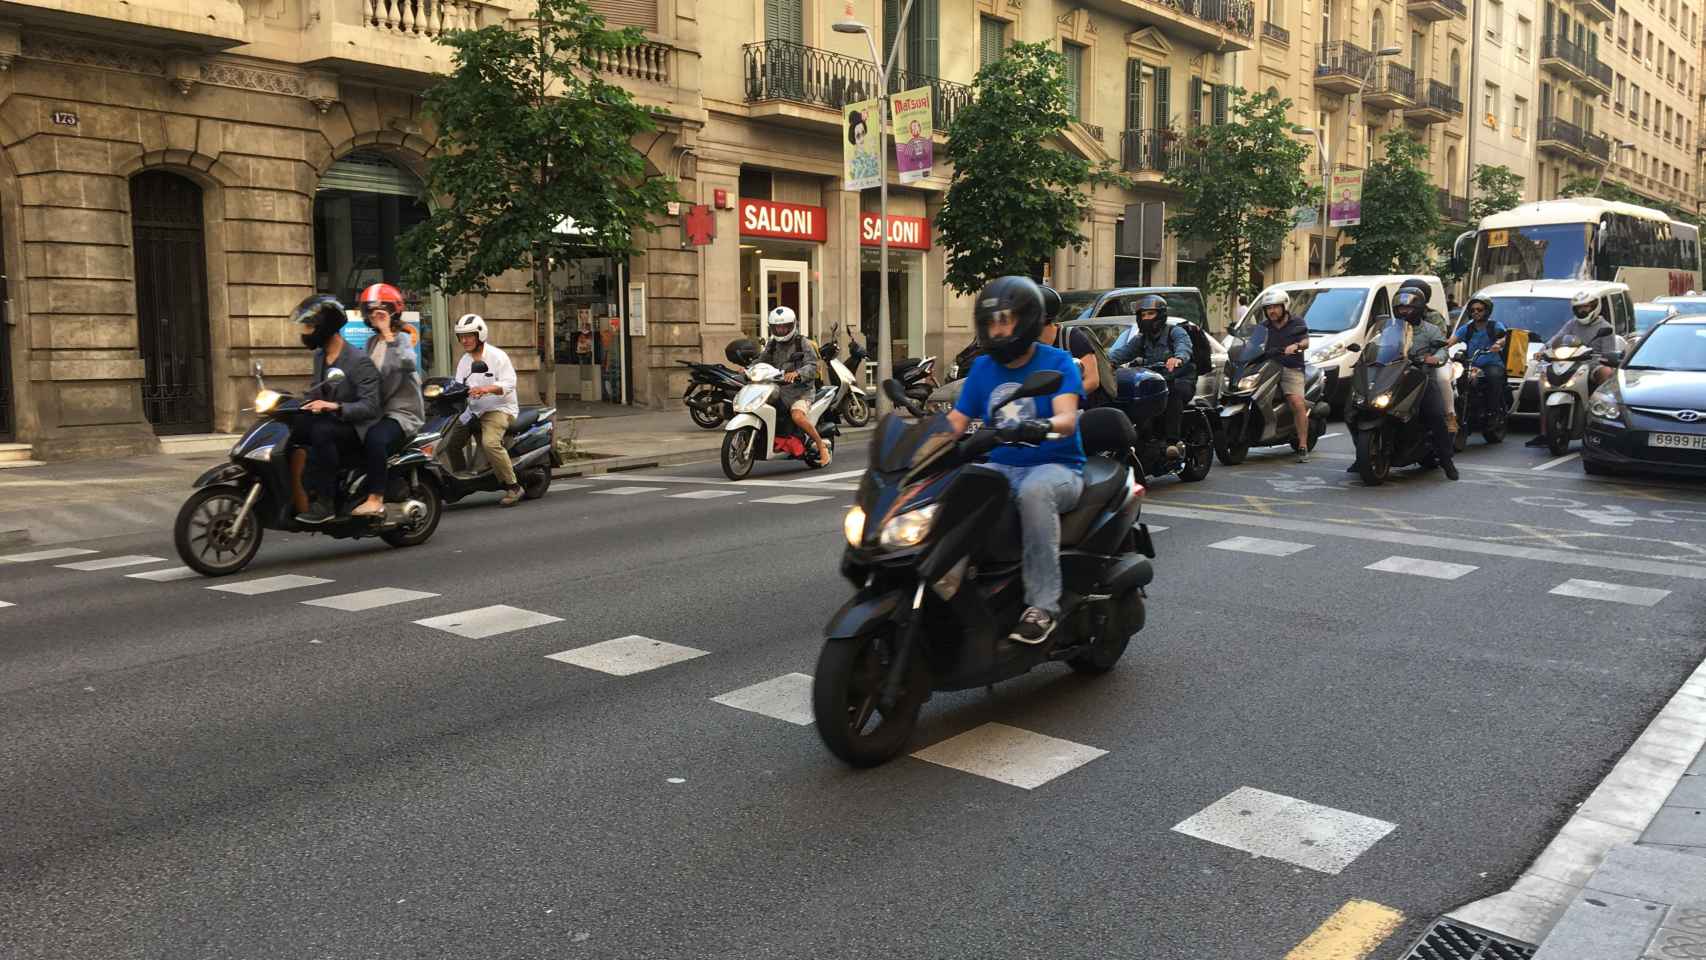 Los scooters son ideales para moverse por Barcelona / PABLO ALEGRE